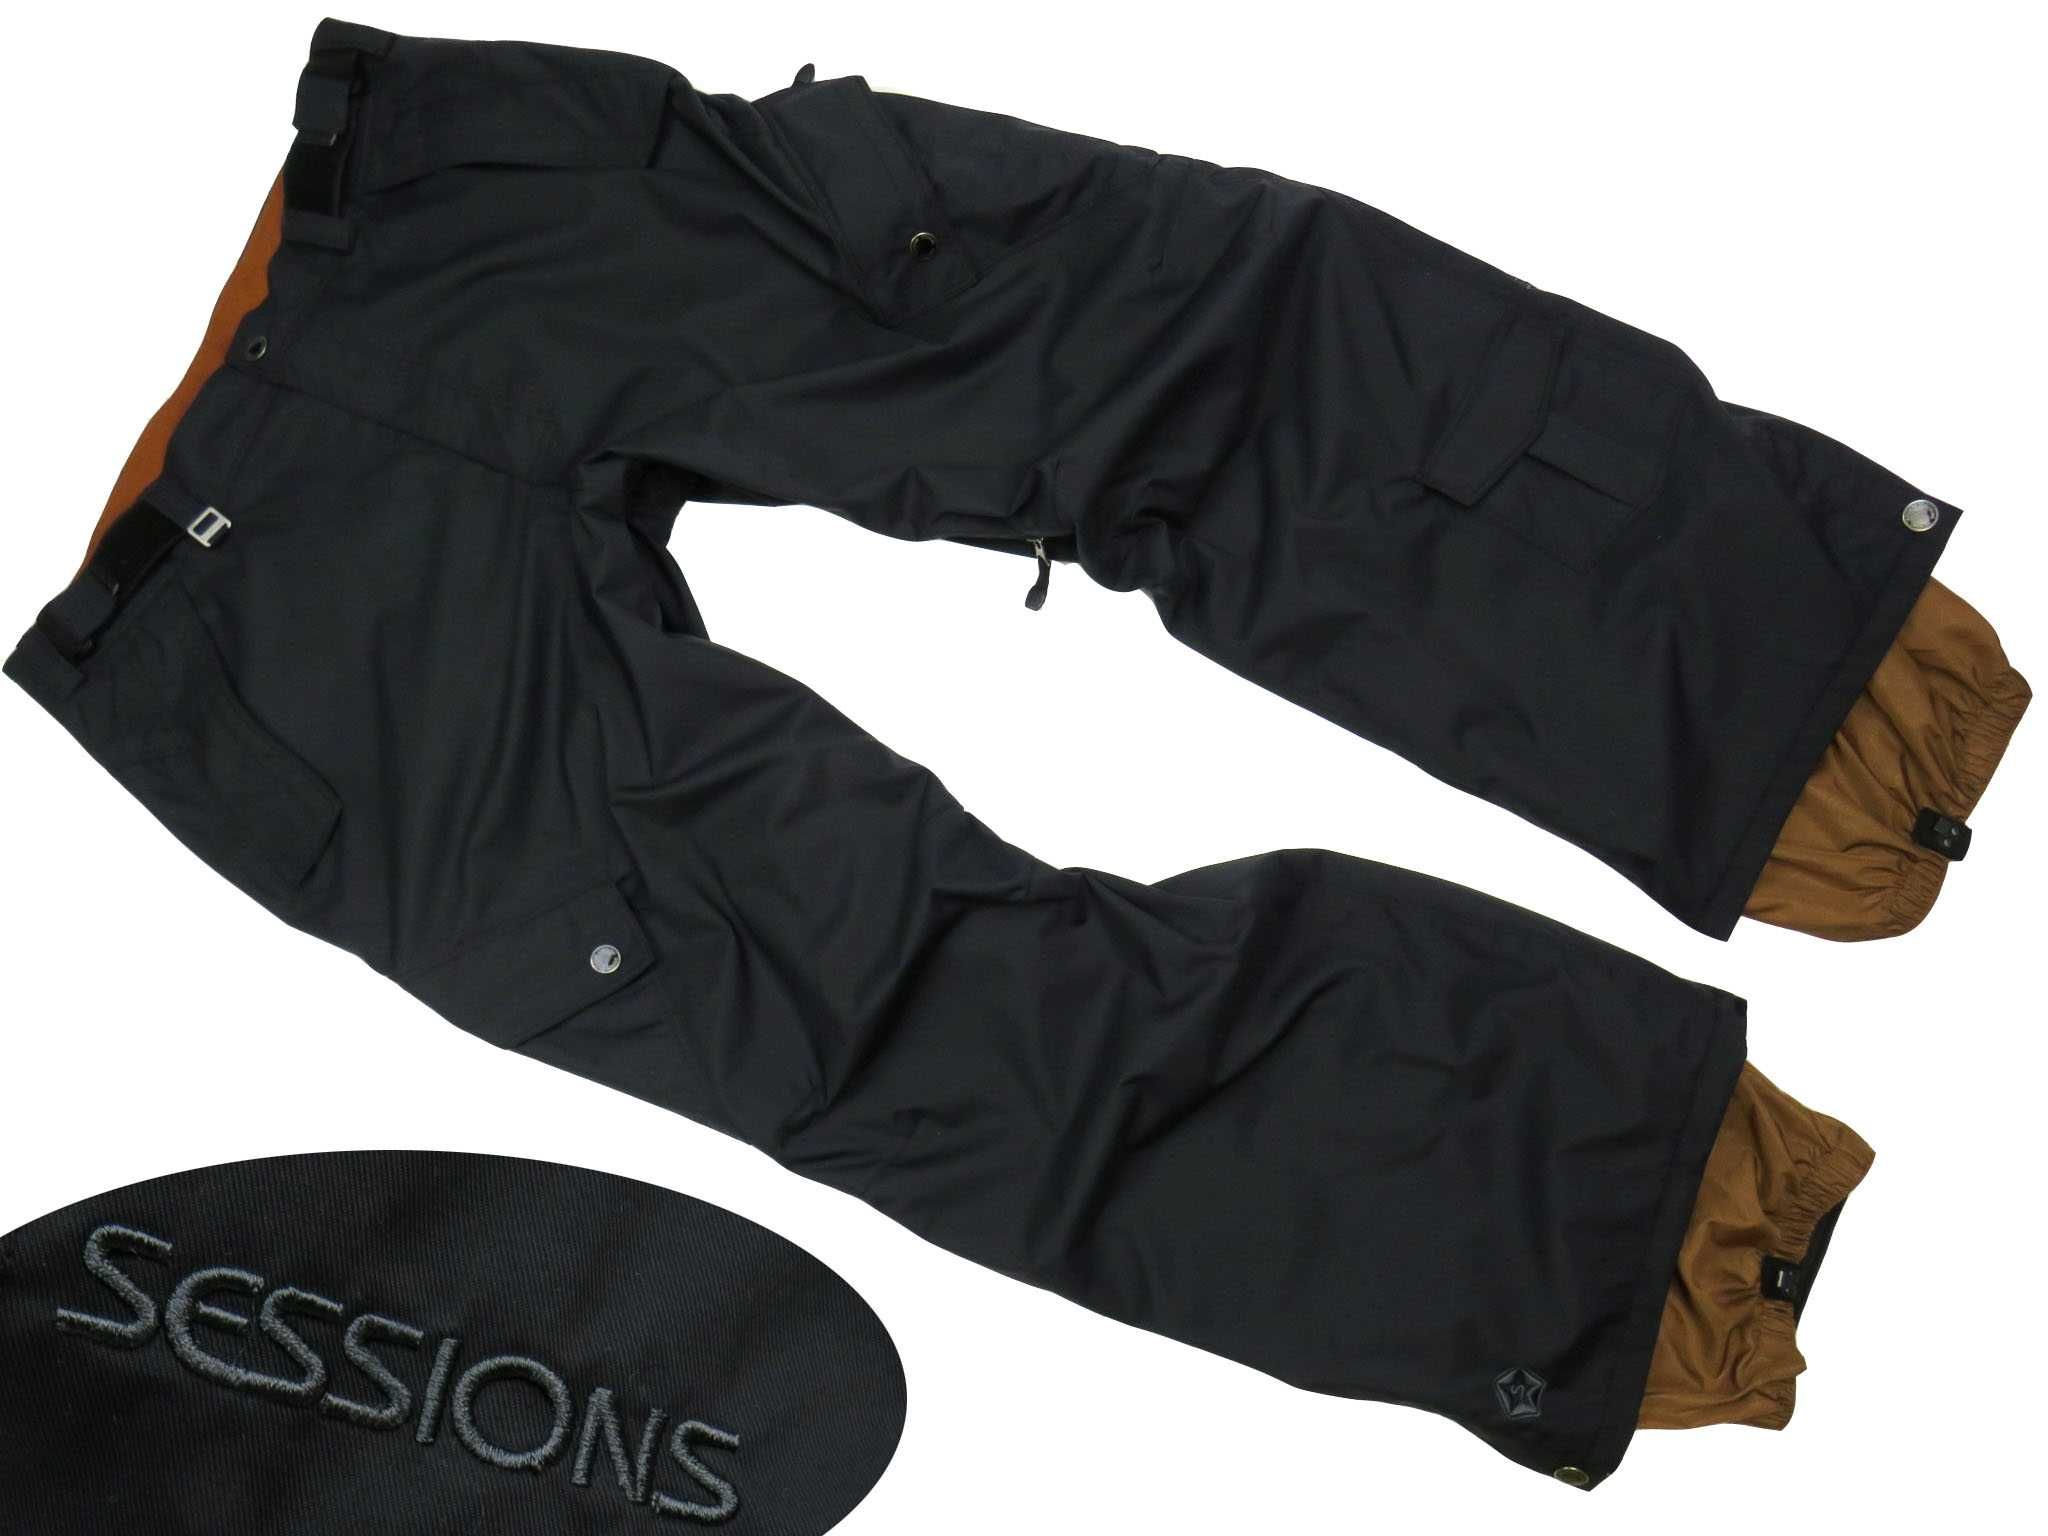 Sessions RECCO Markowe spodnie narciarskie męskie r XL -70%